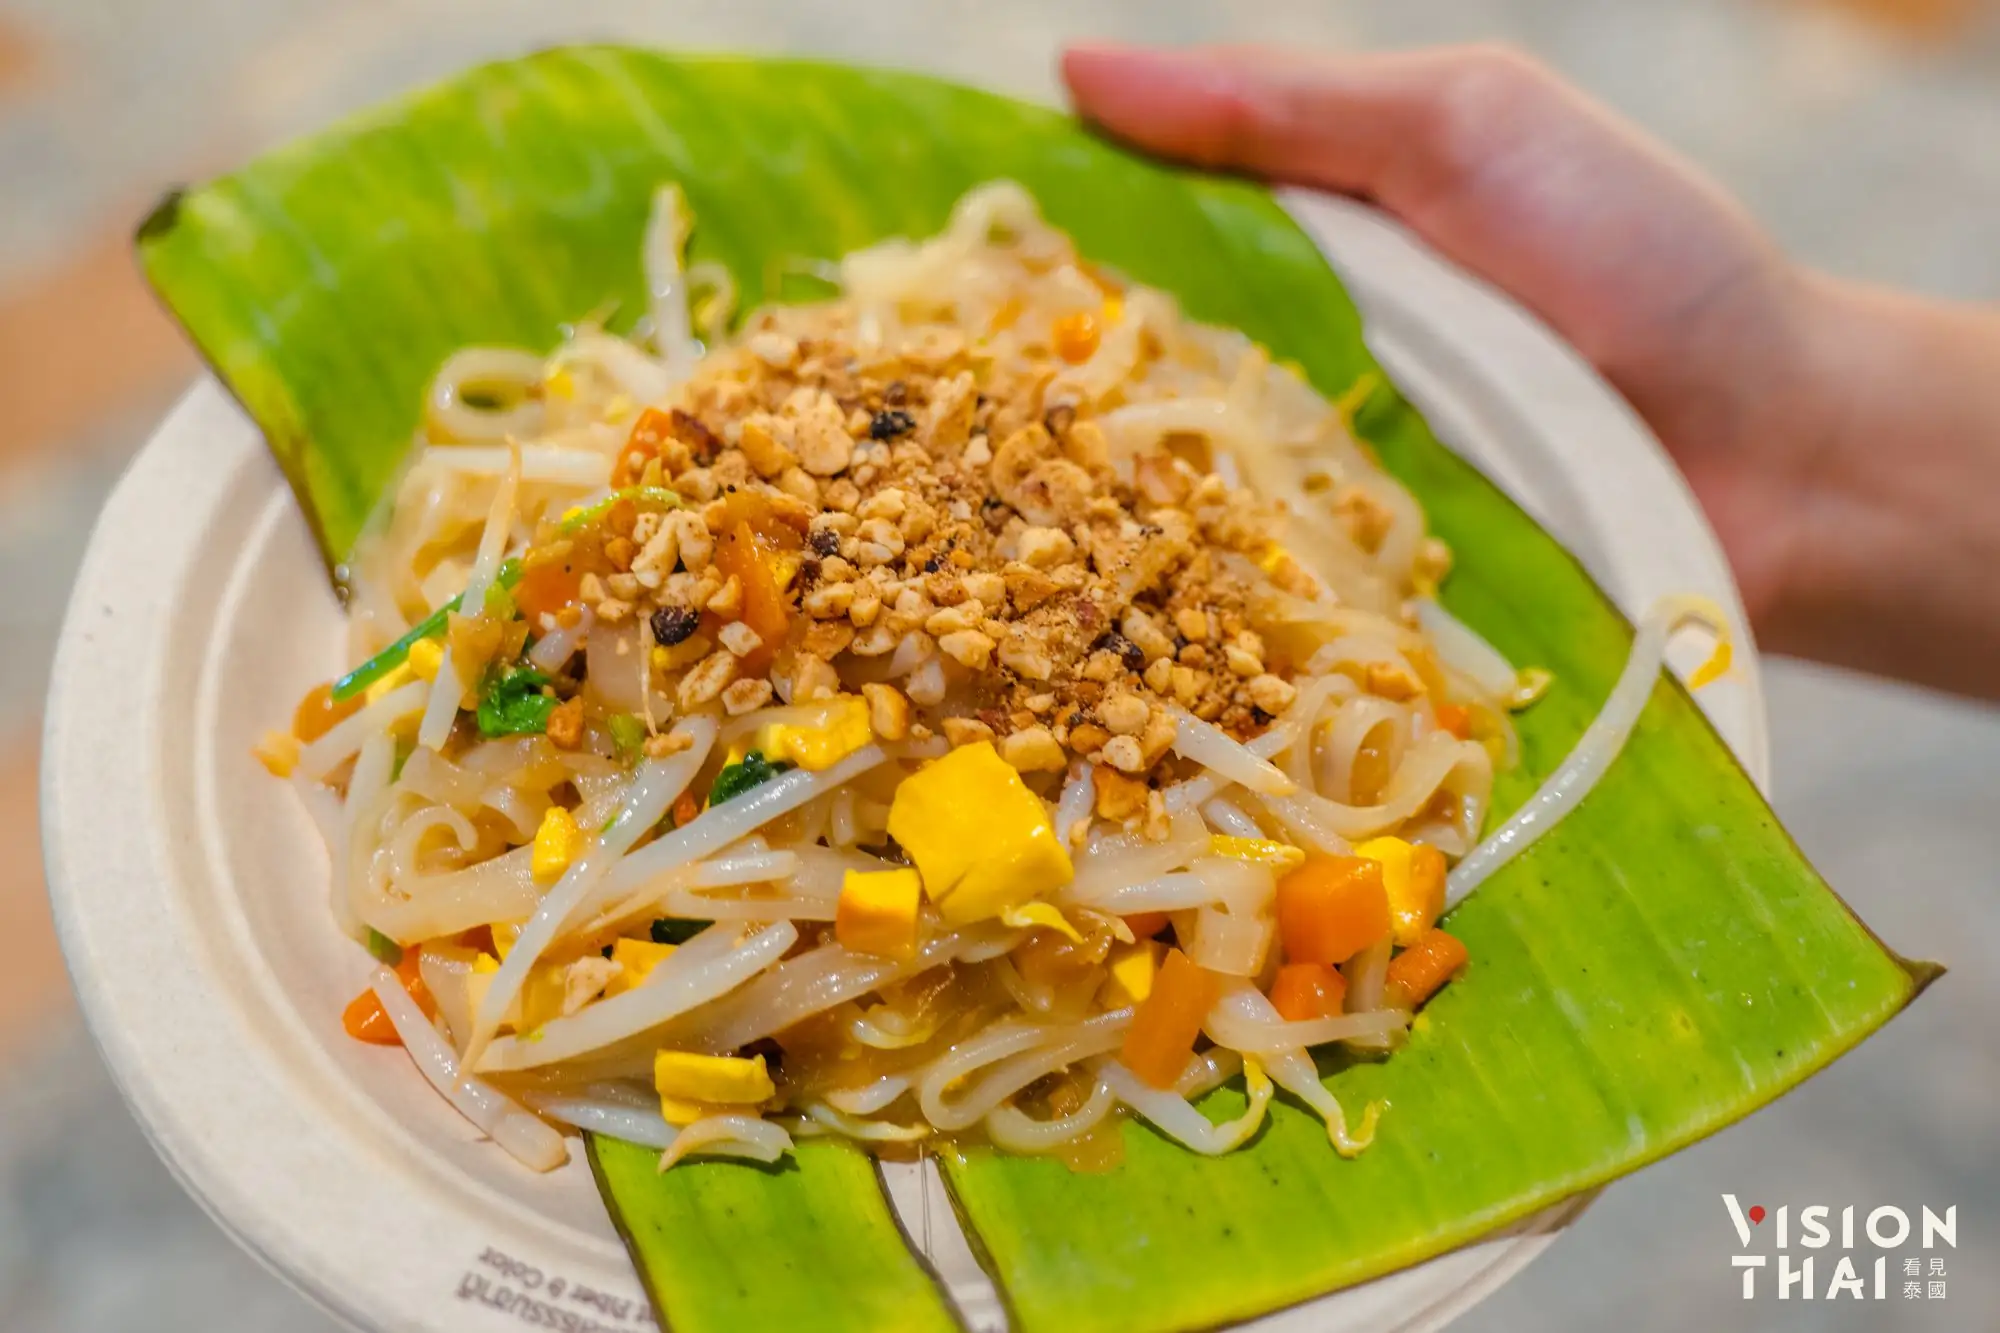 齋節期間暹羅天地ICONSIAM吃得到各式各樣齋版的泰式小吃（圖片來源：Vision Thai 看見泰國）